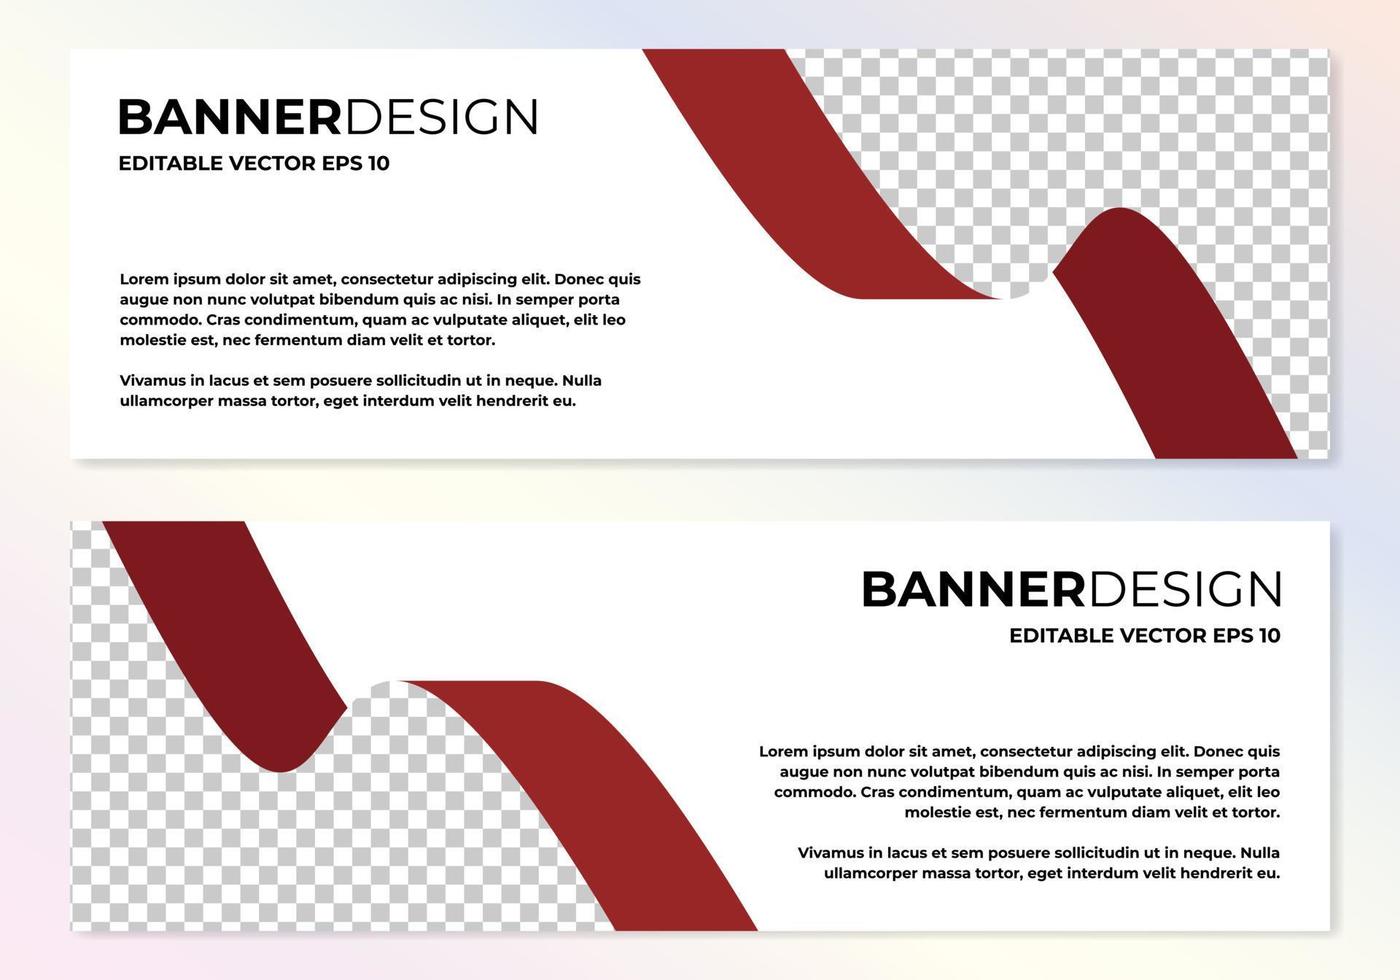 vektor abstrakt banner design webbmall